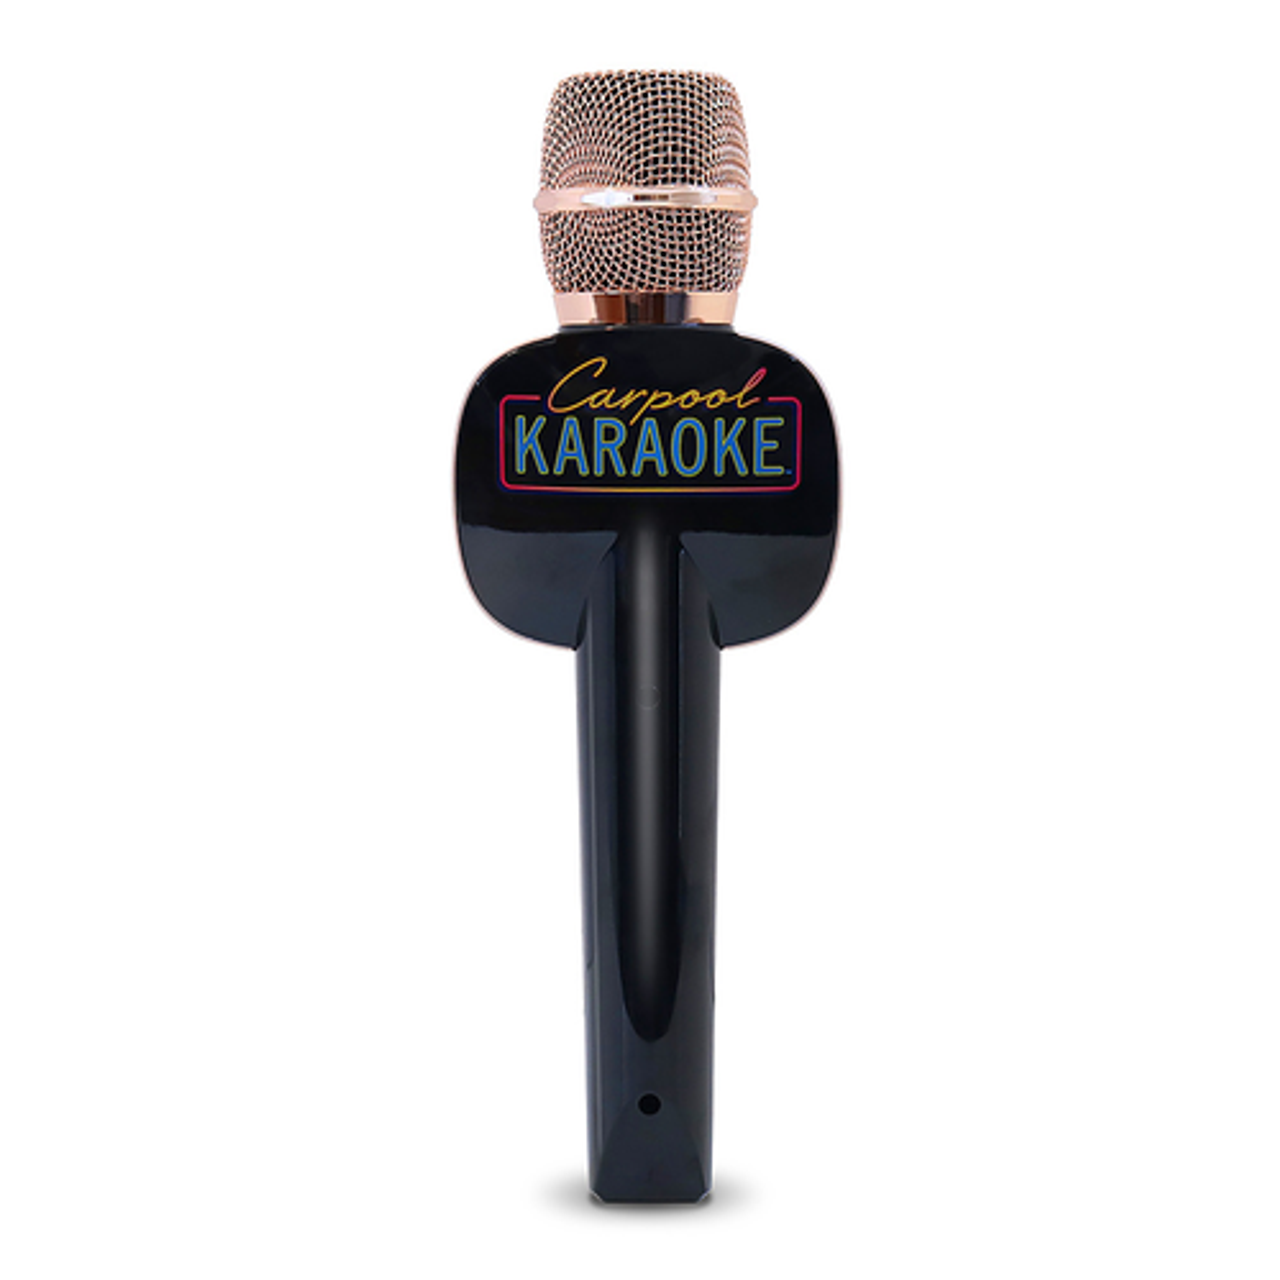 Singing Machine - Carpool Karaoke The Mic 2.0, Rose Gold - Rose Gold